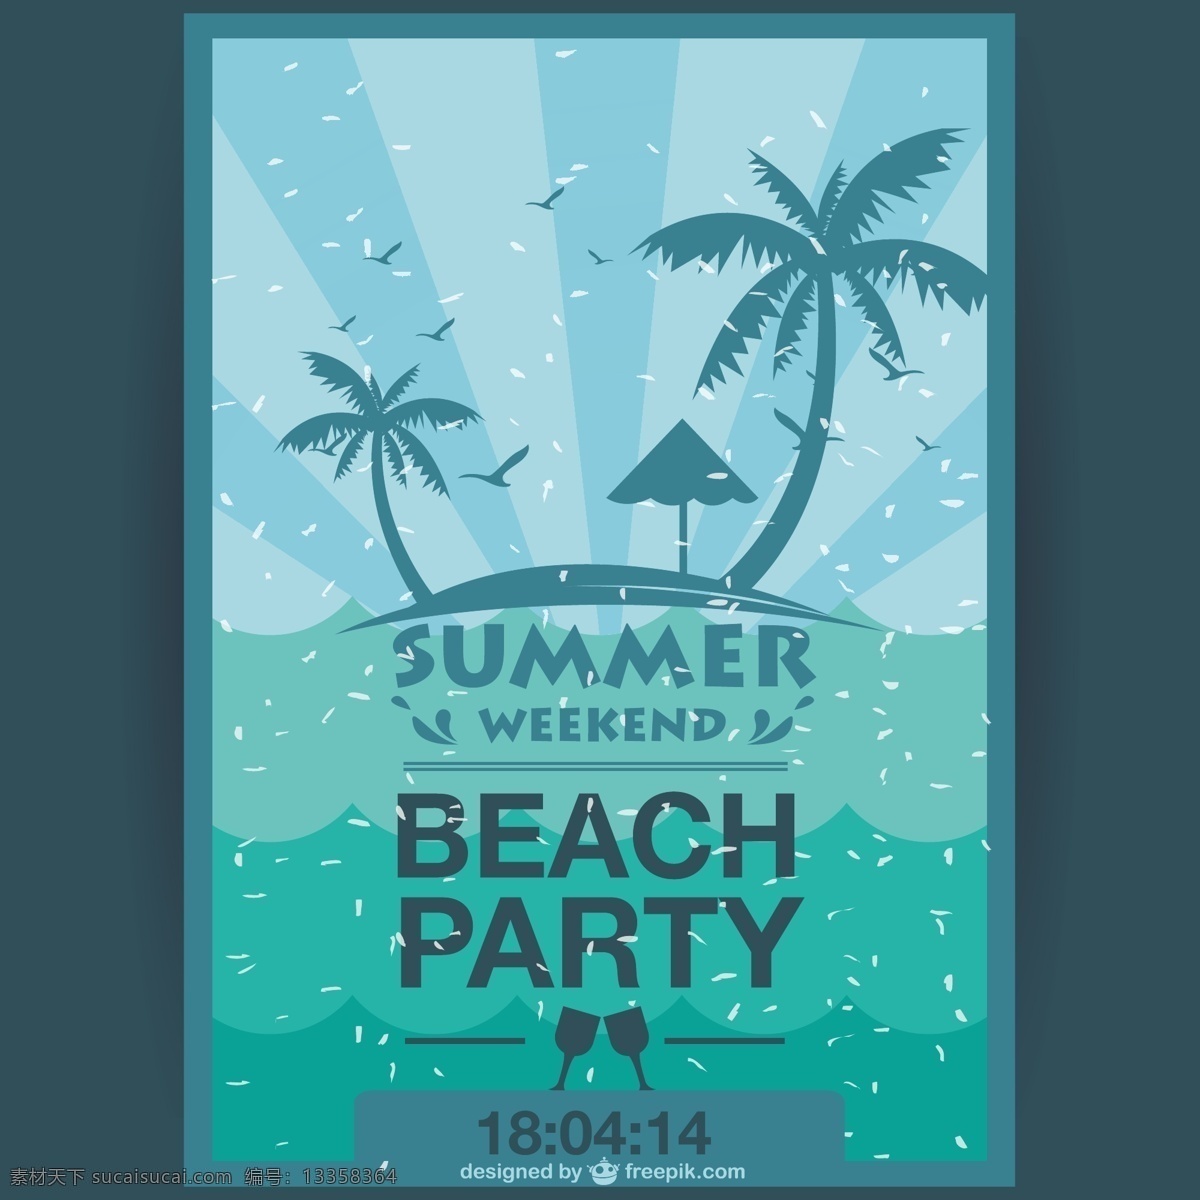 夏季 周末 派对 海报 年份 树 晚会 夏天的设计 复古 沙滩 大海 模板 垃圾 布局 度假 树木 航海 党的海报 棕榈树 棕榈 岛 青色 天蓝色